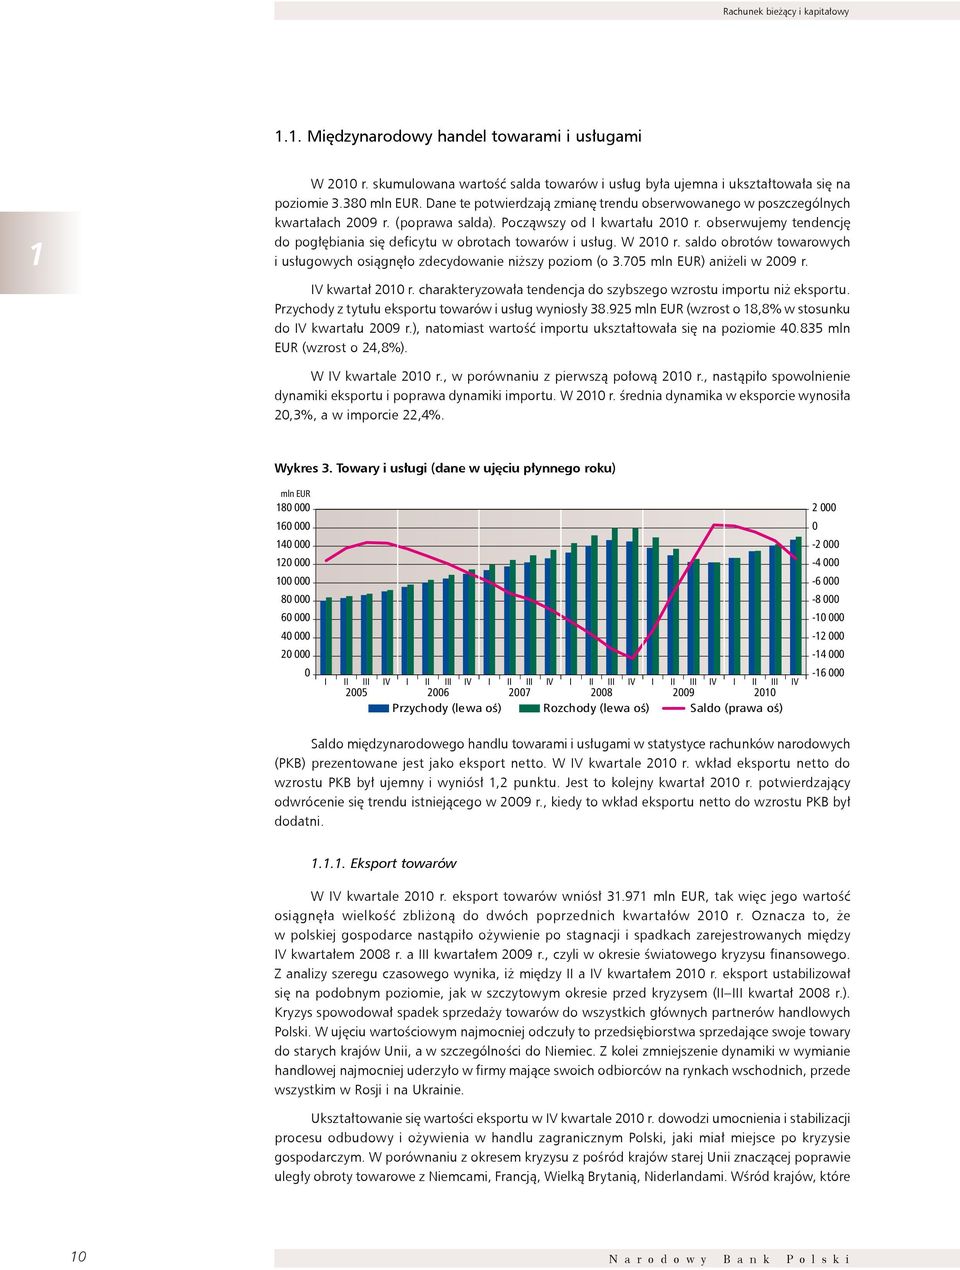 obserwujemy tendencję do pogłębiania się deficytu w obrotach towarów i usług. W 2010 r. saldo obrotów towarowych i usługowych osiągnęło zdecydowanie niższy poziom (o 3.705 mln EUR) aniżeli w 2009 r.